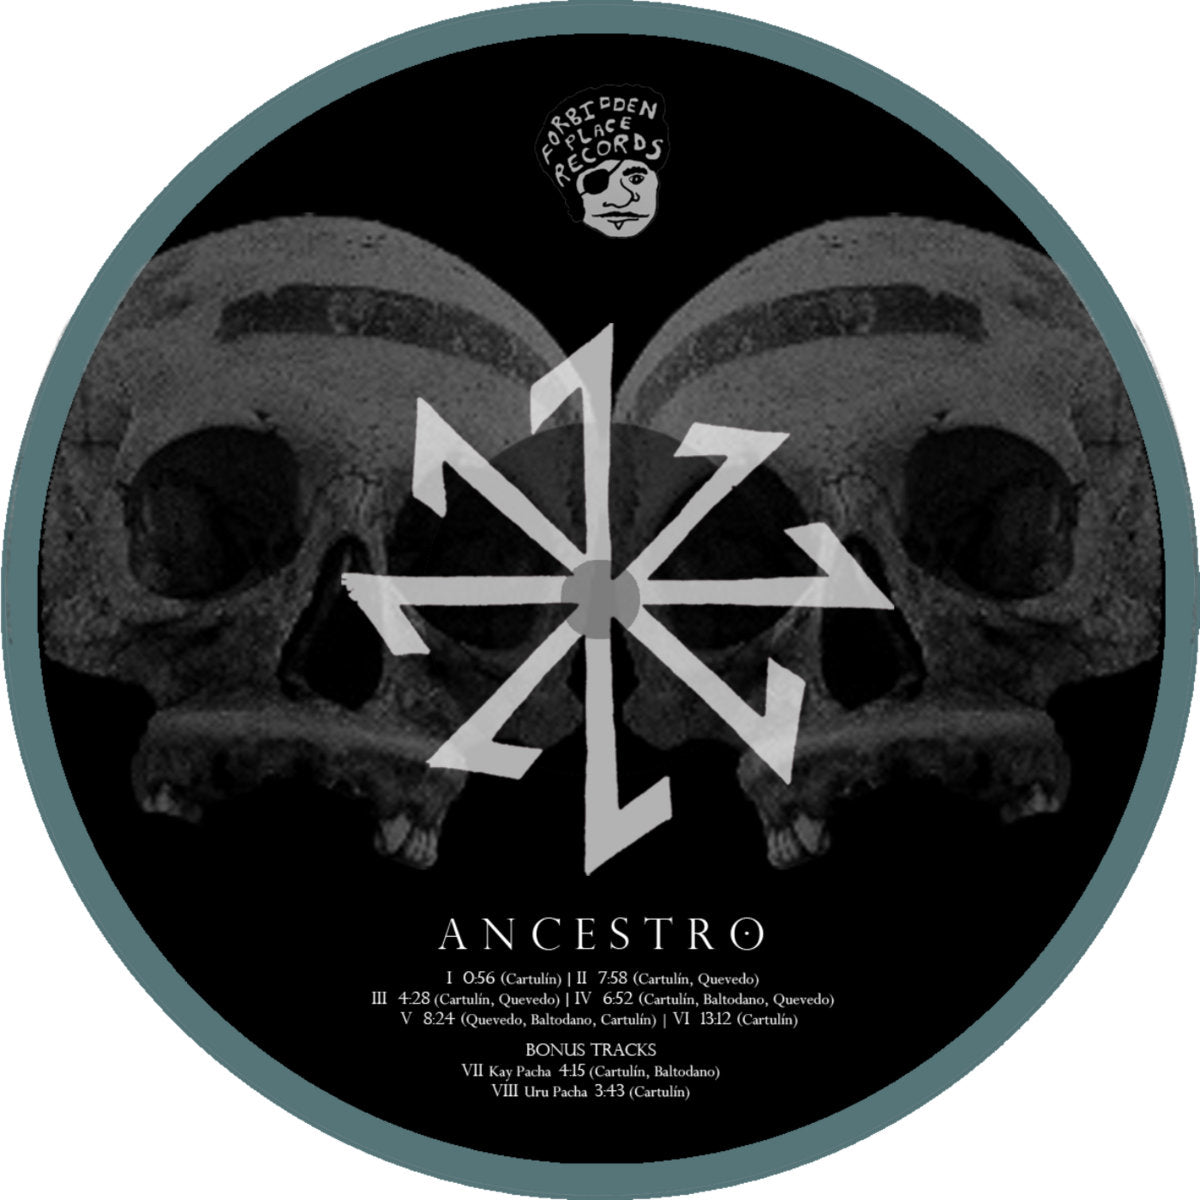 ANCESTRO Compact Disc